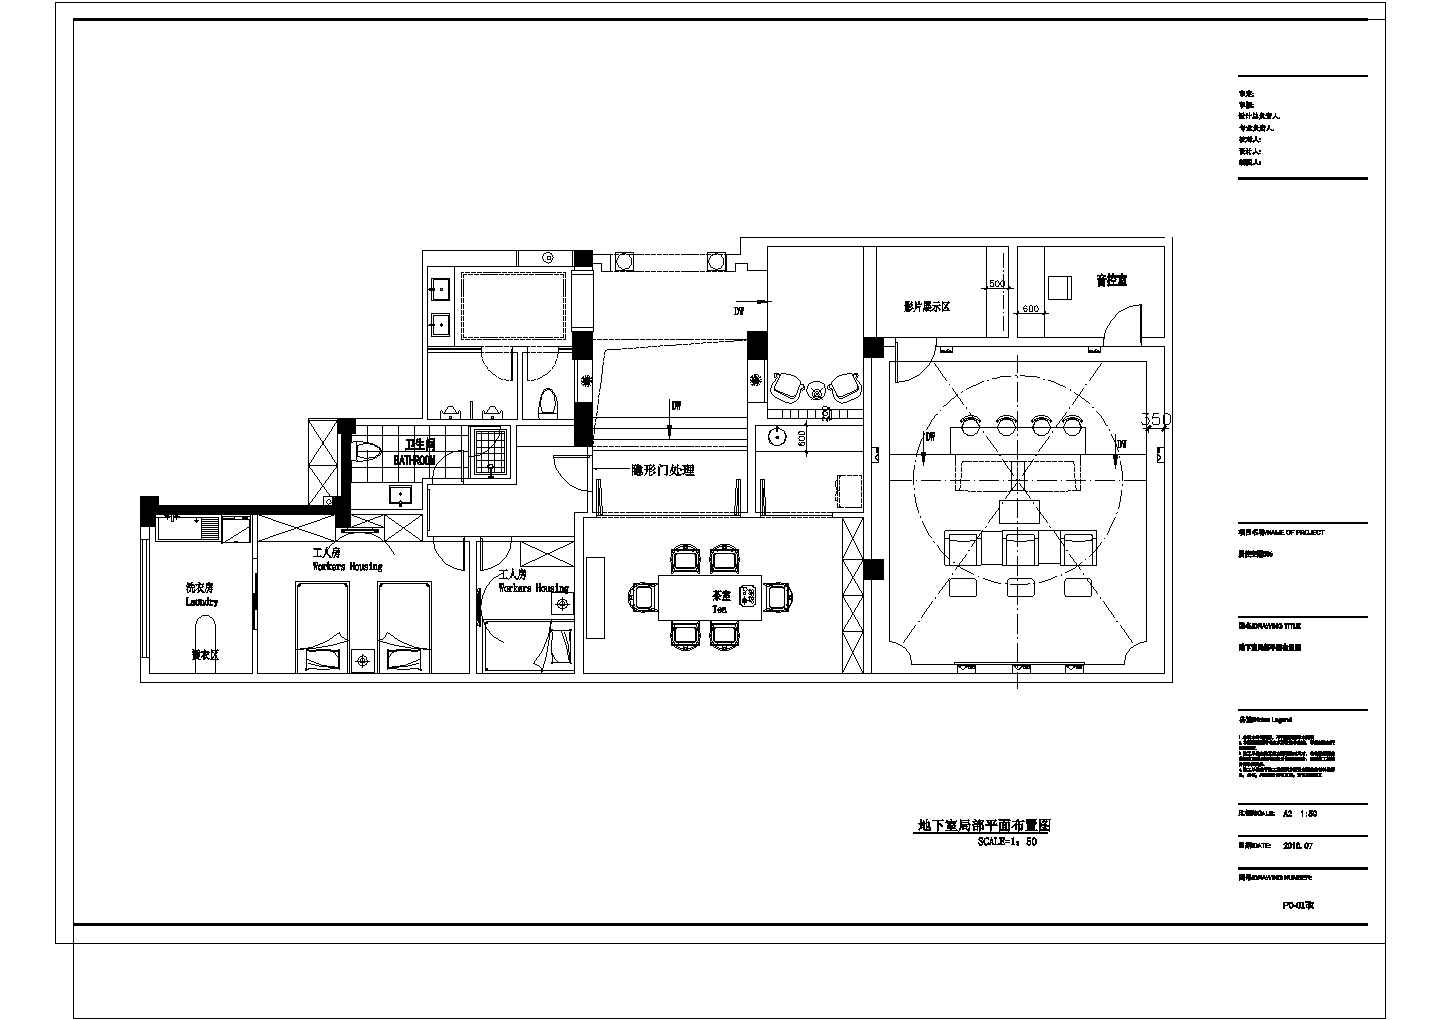 居住主题V3C型506地下室调改dwgCAD设计图图纸